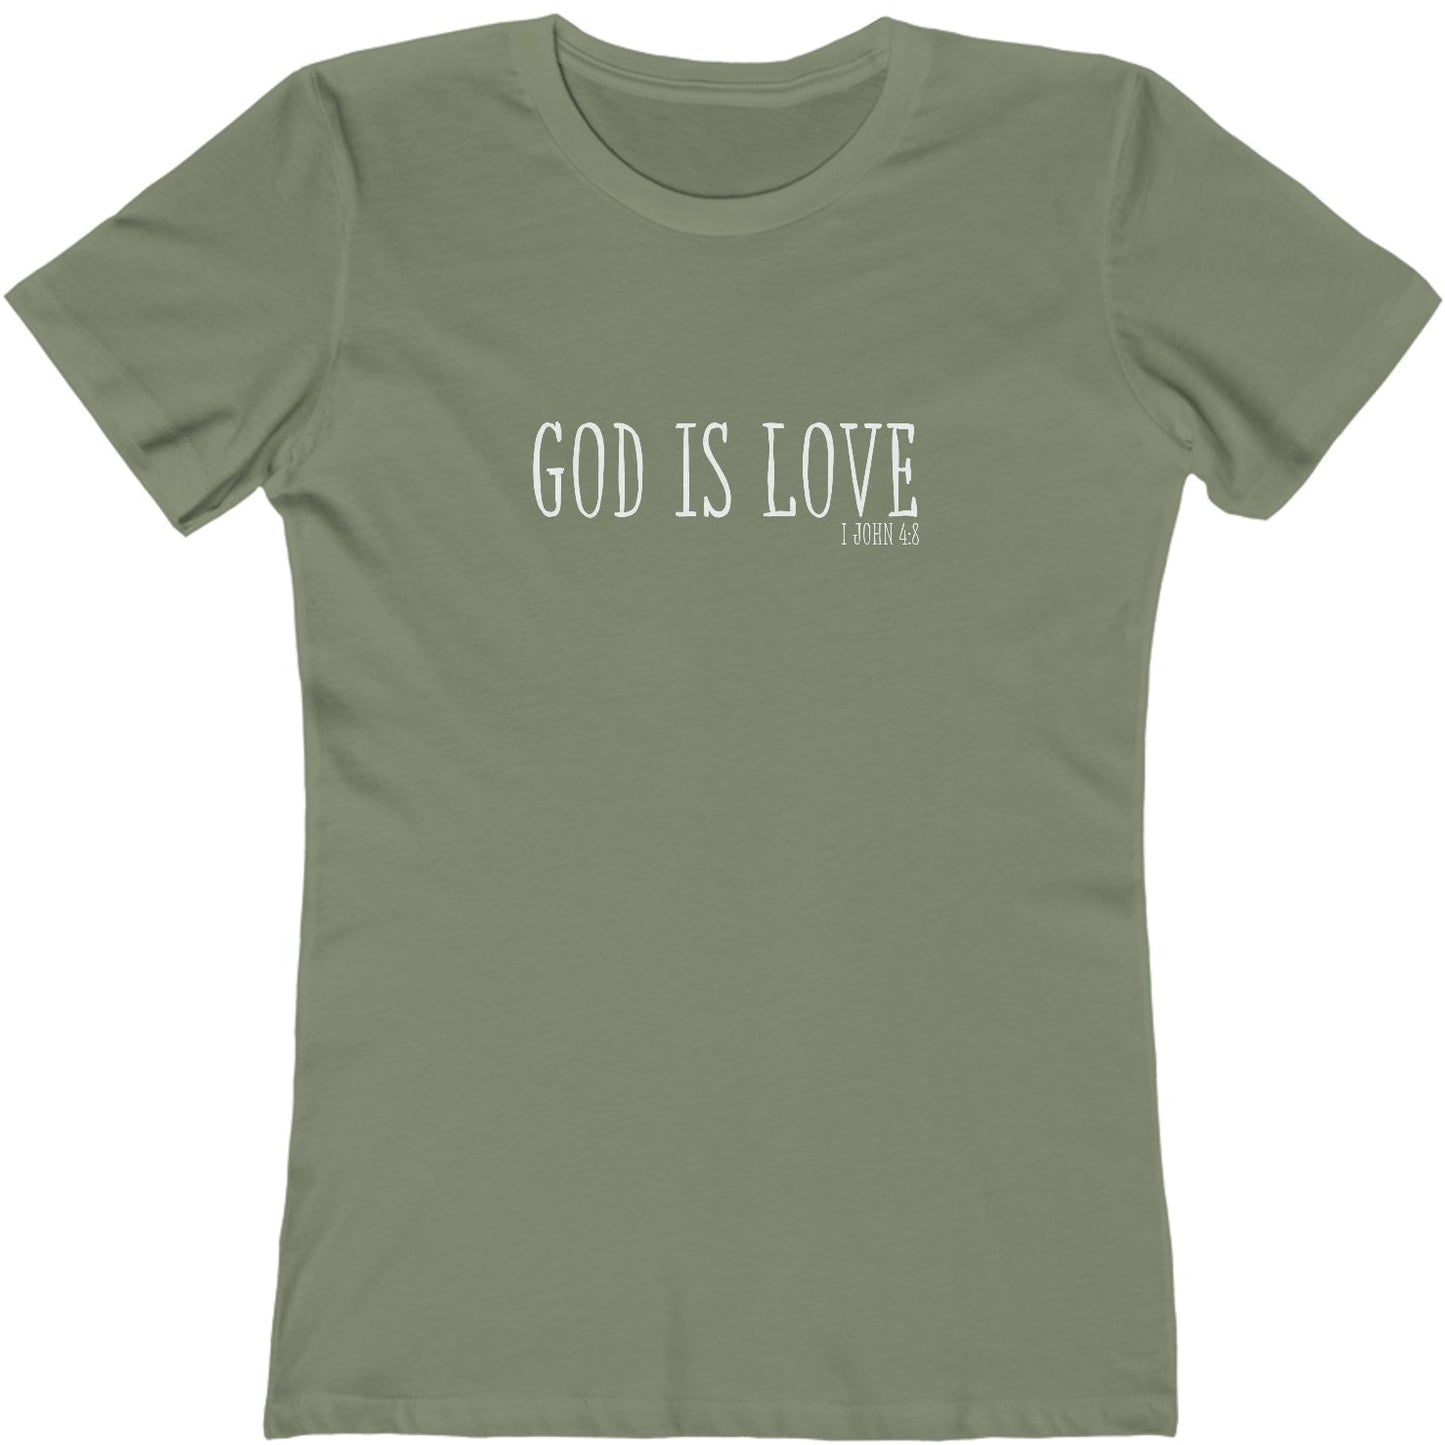 1 John 4:8 God is Love, Christian T-shirt for Women olive